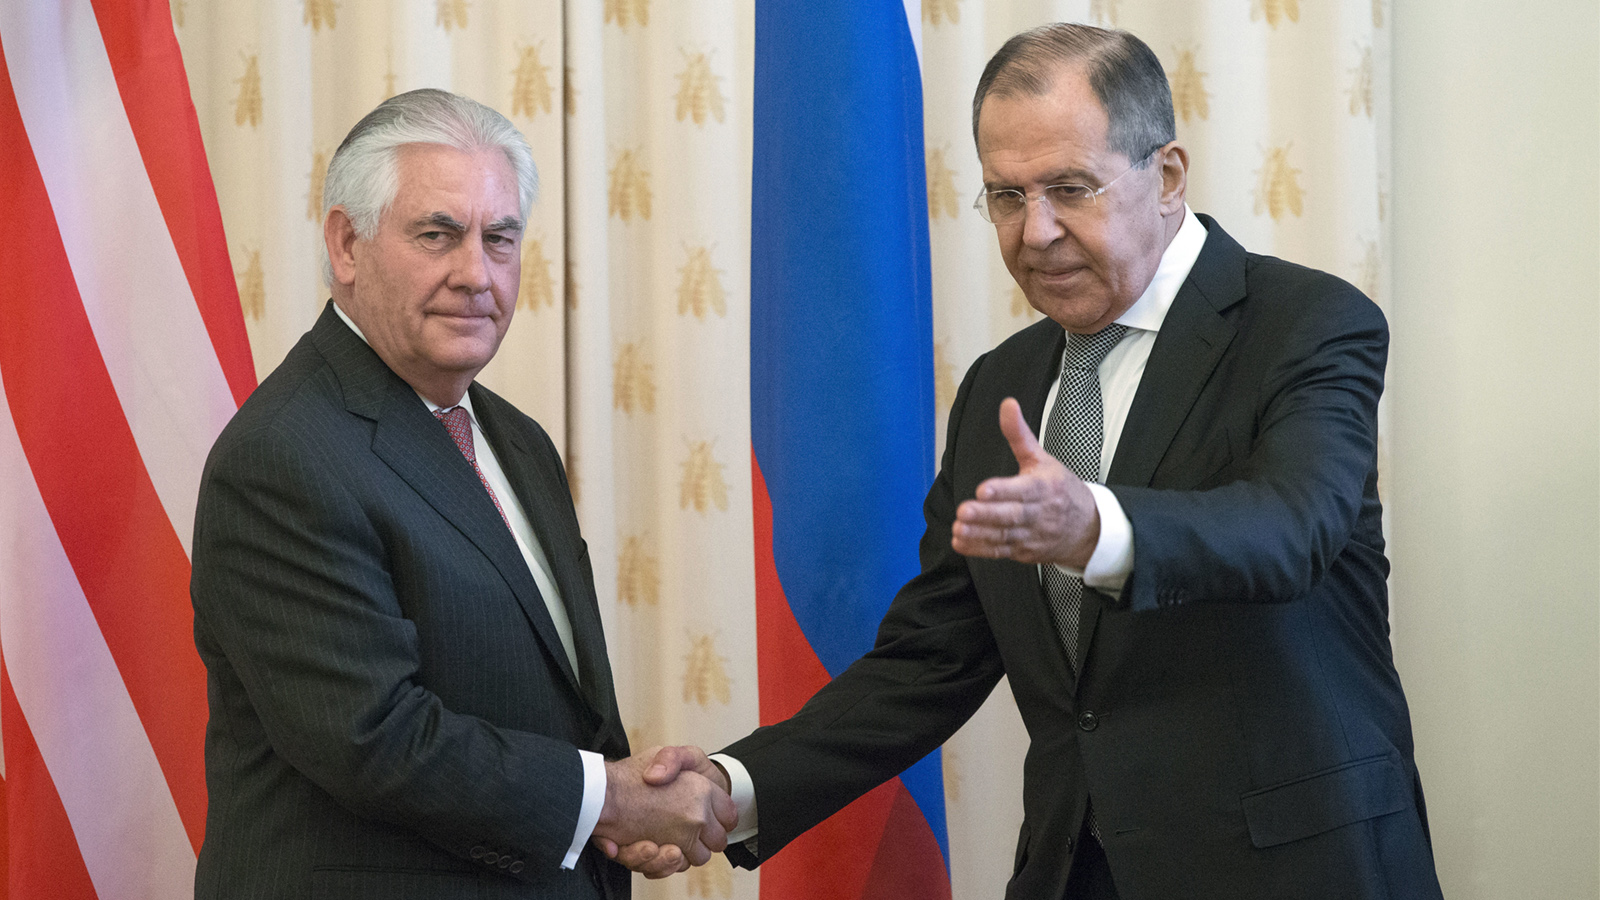 מזכיר המדינה רקס טילרסון ושר החוץ הרוסי סרגיי לברוב בפגישה ברוסיה 12.4.17 (צילום: AP Photo/Alexander Zemlianichenko).